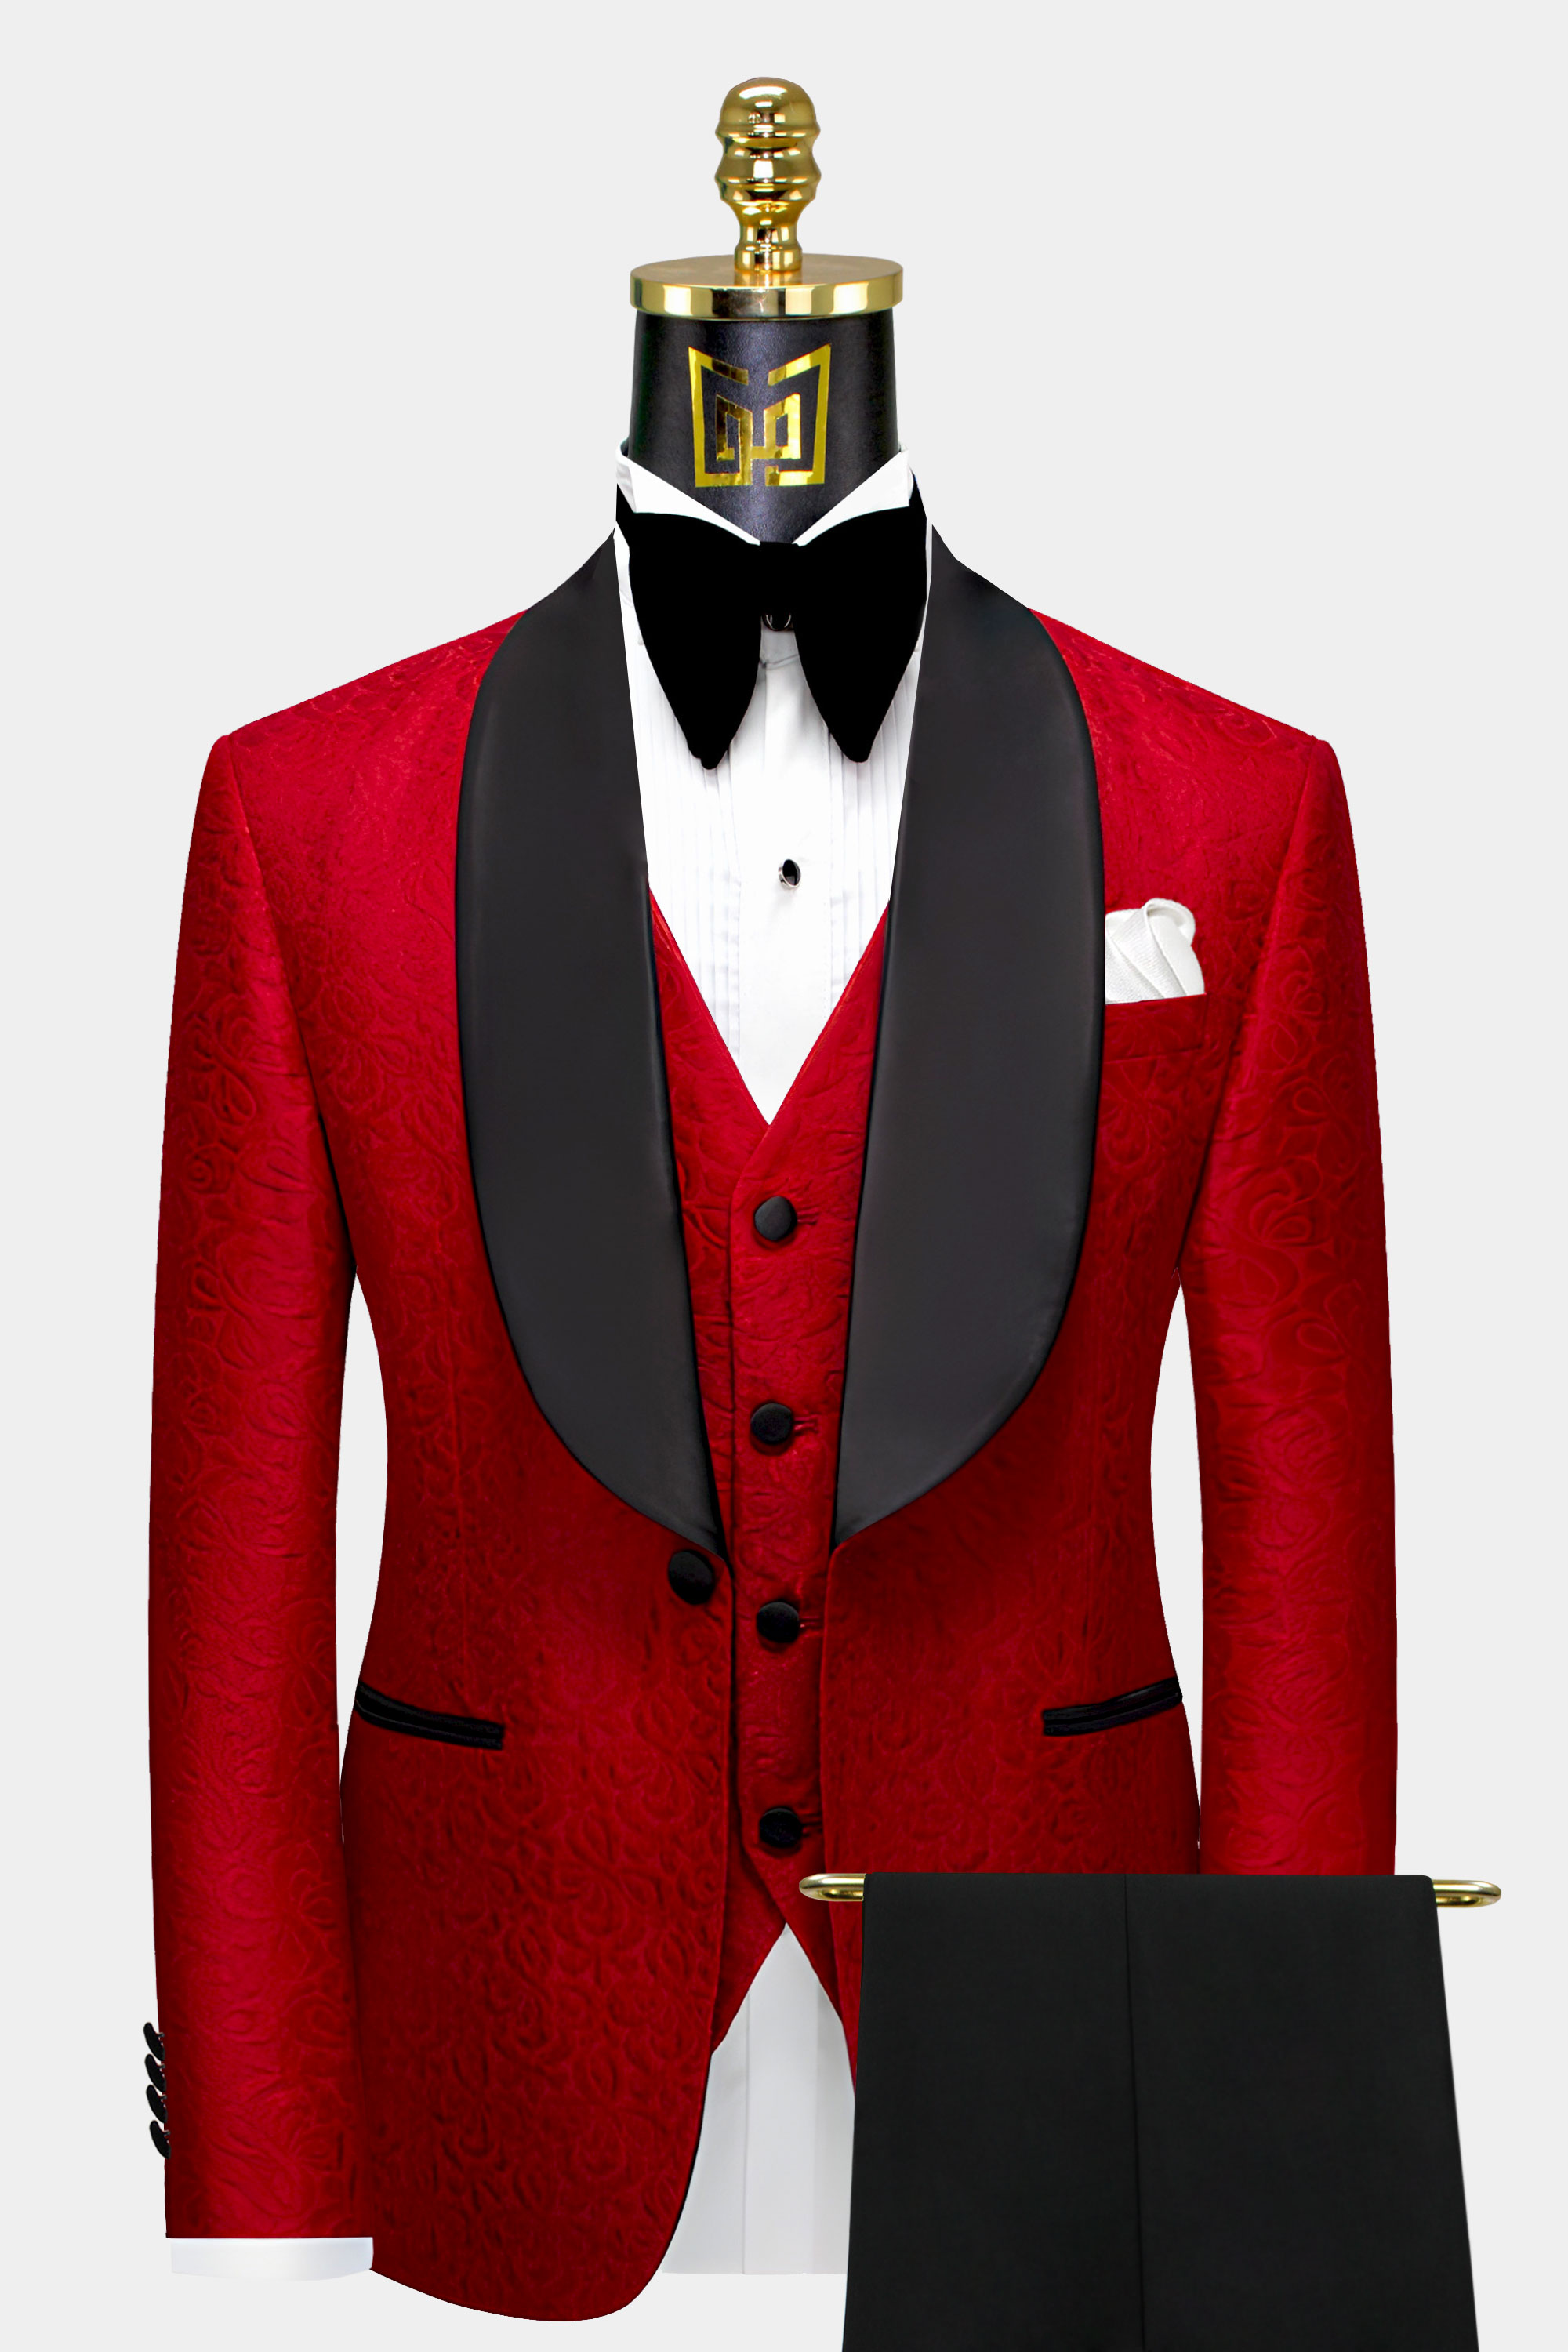 Apple-Red-and-Black-Tuxedo-Groom-Wedding-Suit-For-Men-from-Gentlemansguru.com